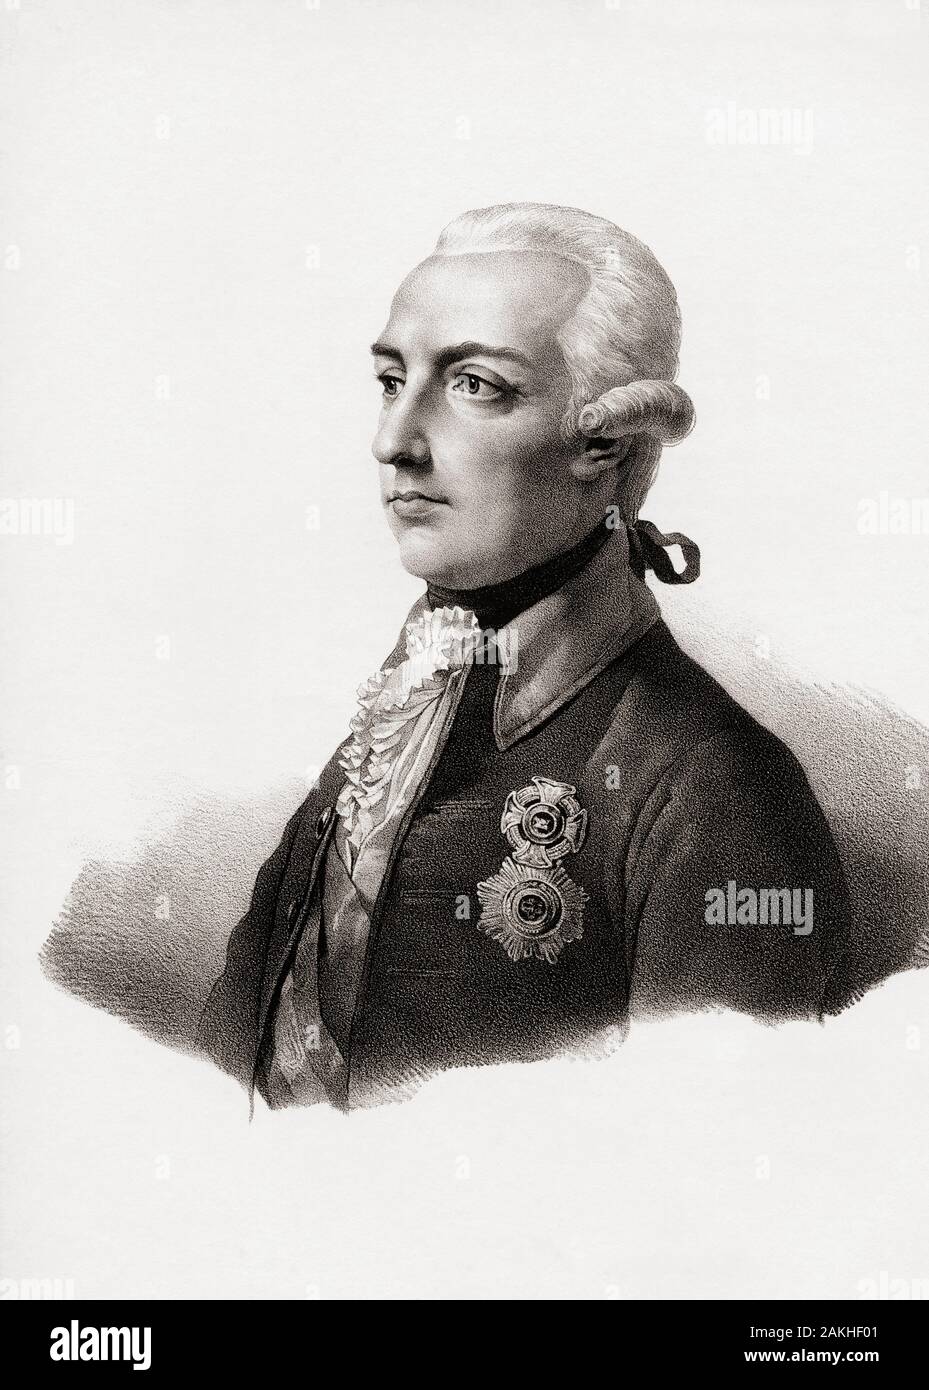 Joseph II., 1741 - 1790, Kaiser des Heiligen Römischen Reiches. König von Ungarn, König von Ungarn, König von Böhmen. Stockfoto